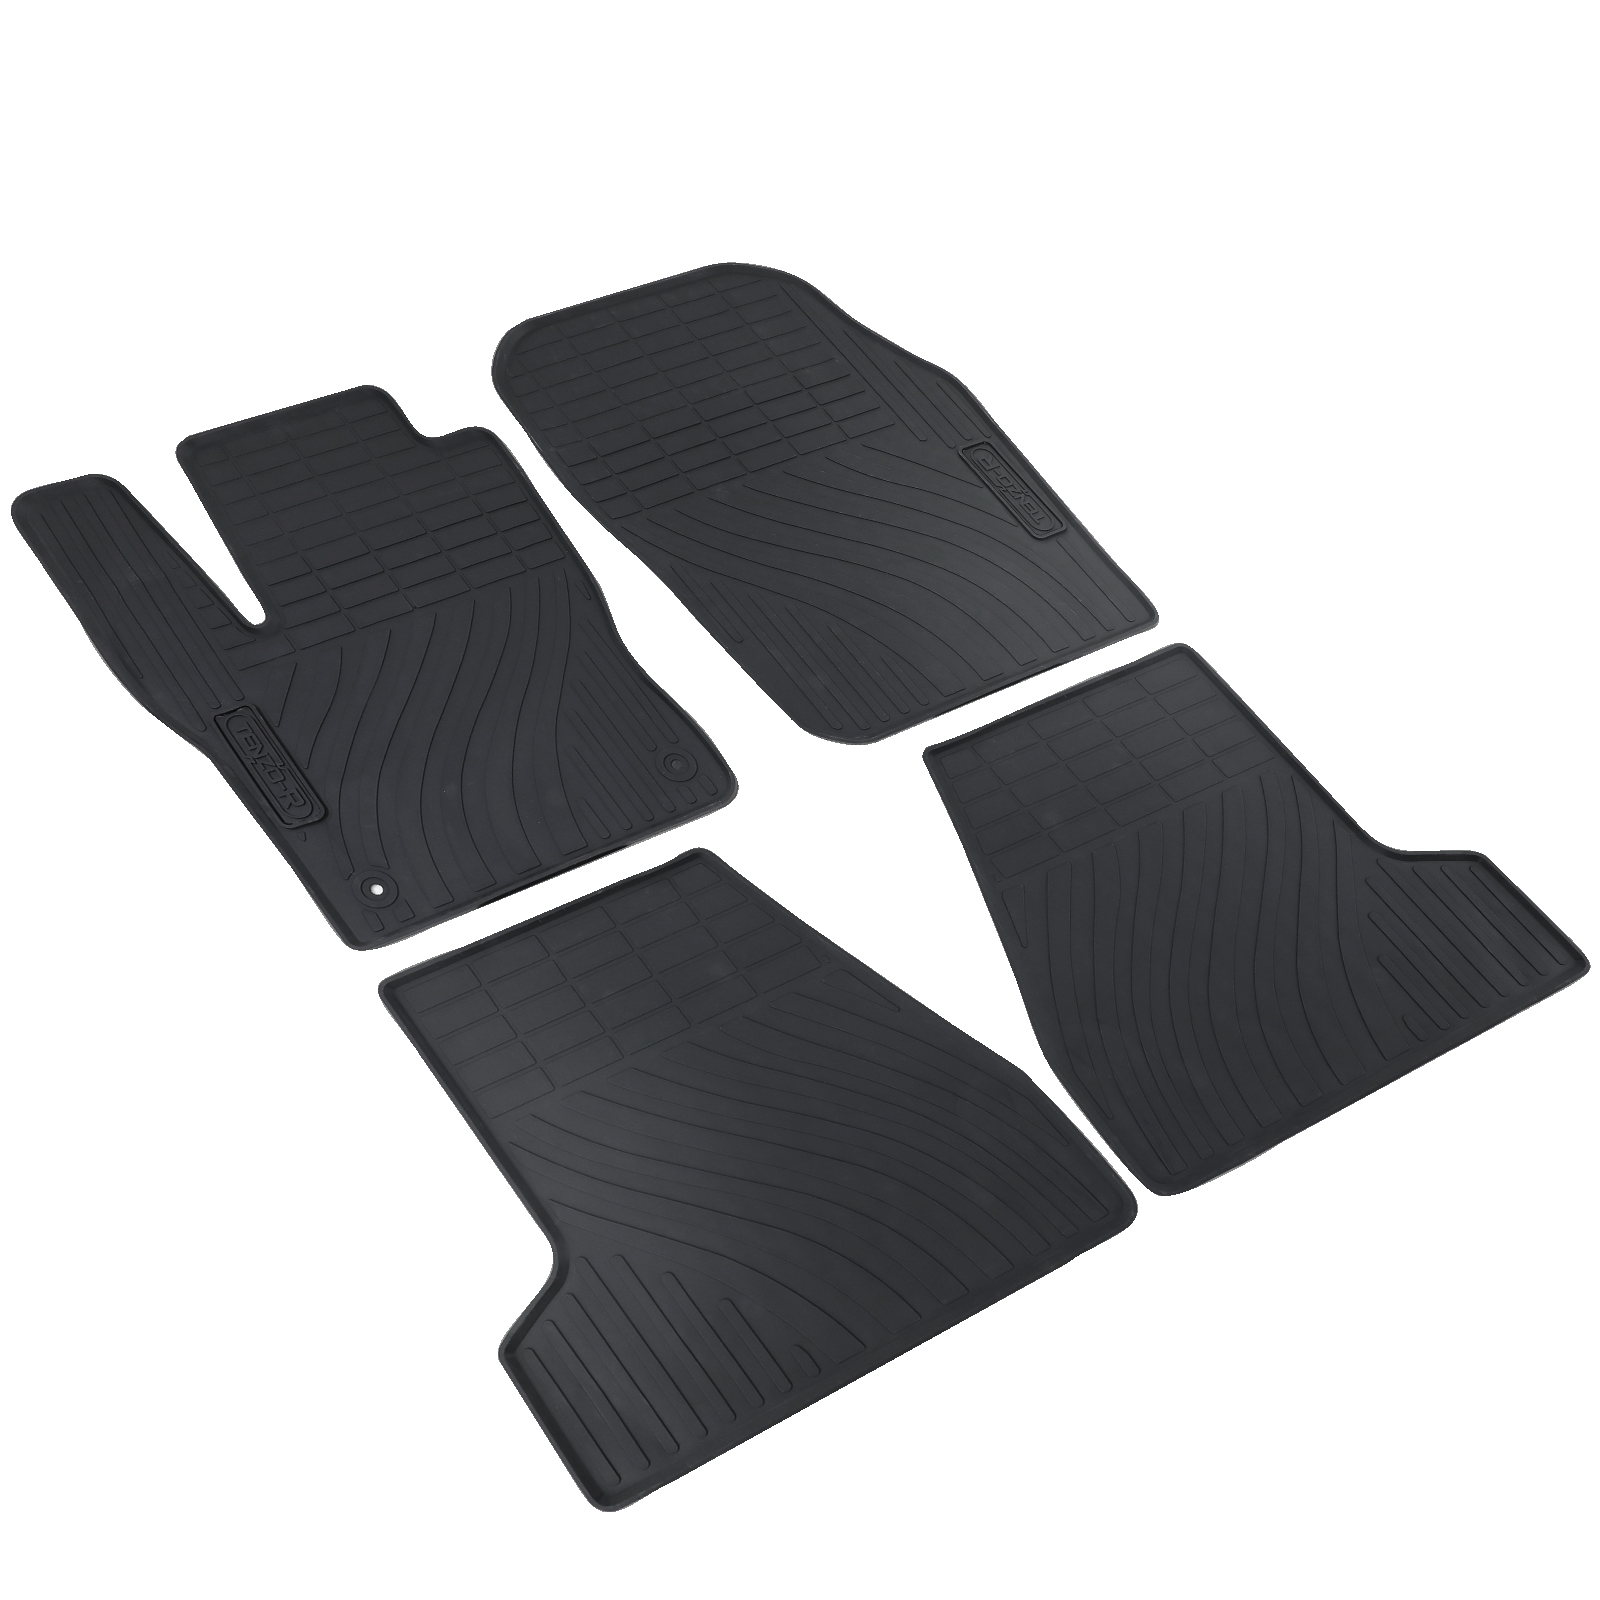 Premium Gummi Fußmatten Set 4-teilig Schwarz für Ford Focus III 10-18 kaufen